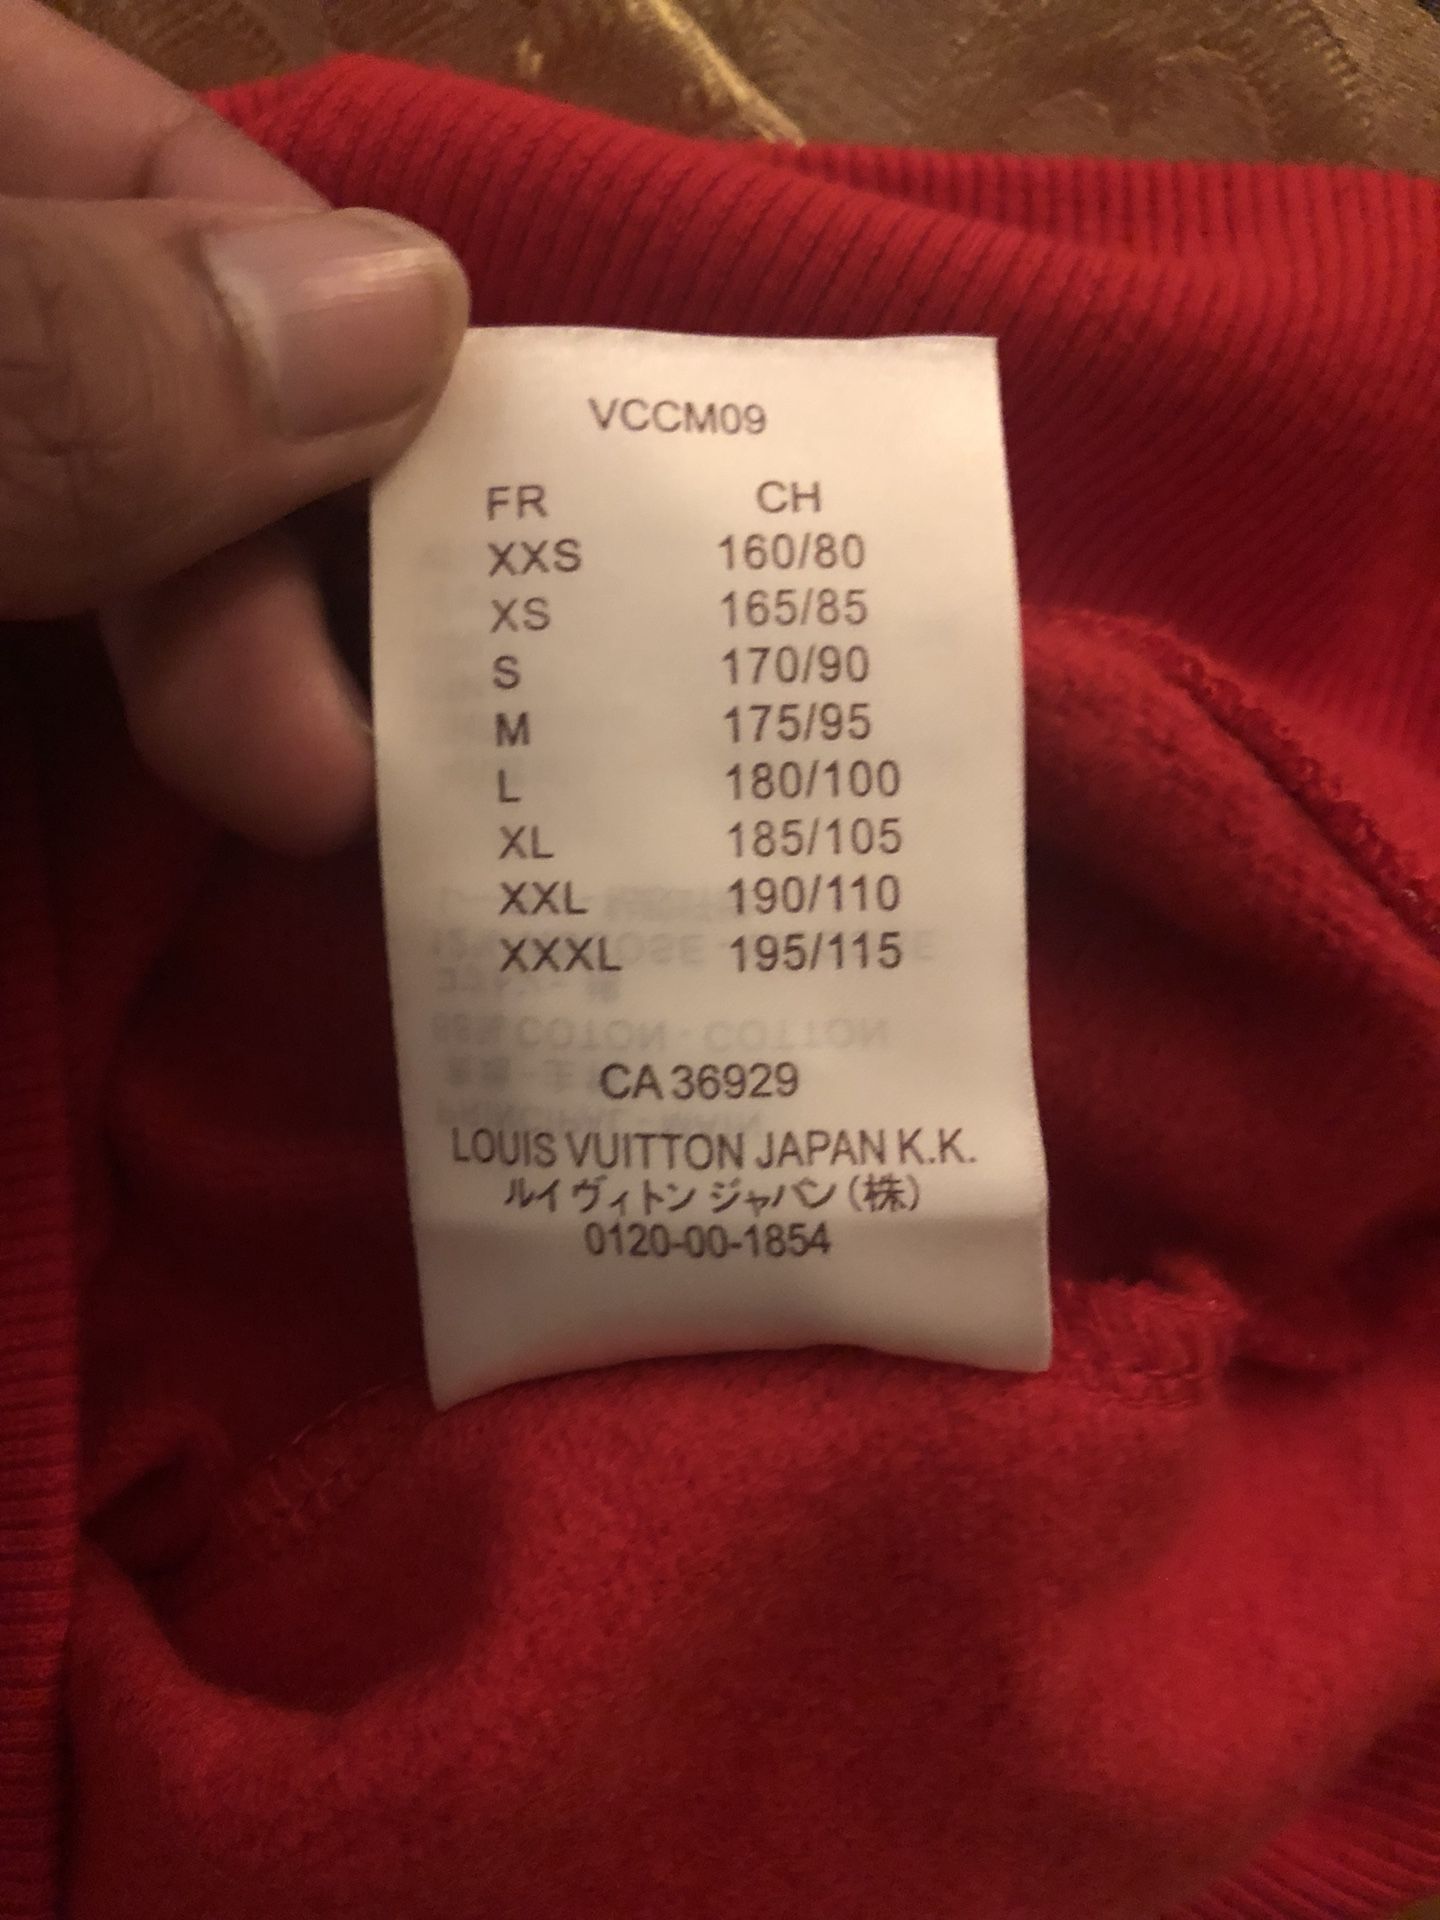 Supreme x Louis Vuitton Camo Denim Overalls for Sale in Doral, FL - OfferUp